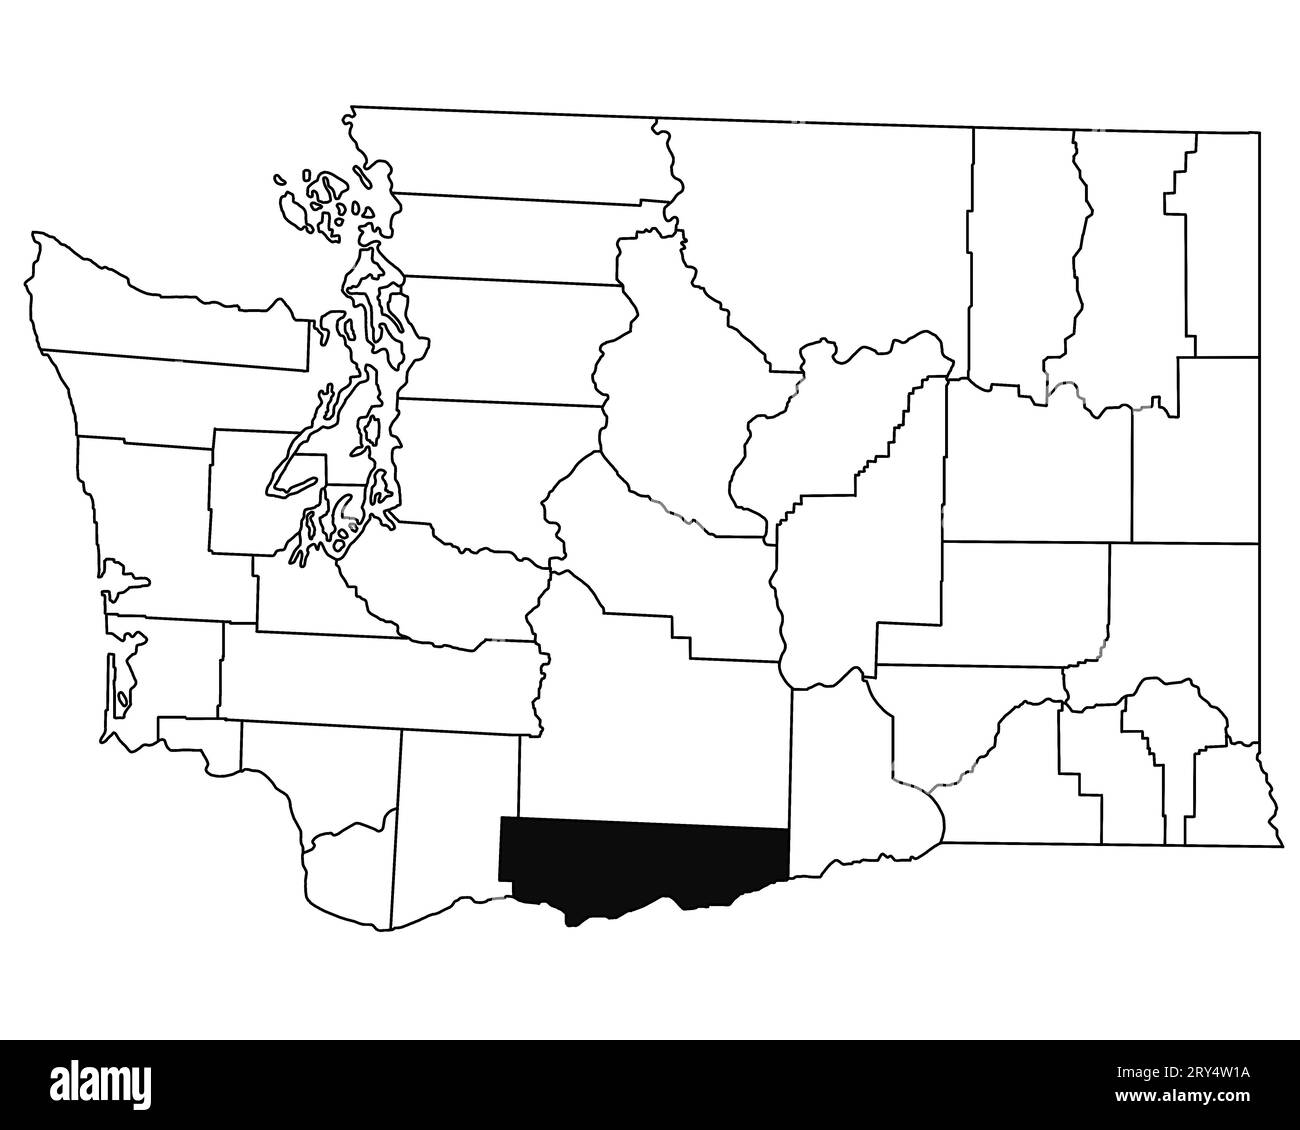 Carte du comté de klickitat dans l'état de Washington DC sur fond blanc. Carte de Single County surlignée en noir sur la carte DE WASHINGTON. ÉTATS-UNIS, ÉTATS-UNIS Banque D'Images